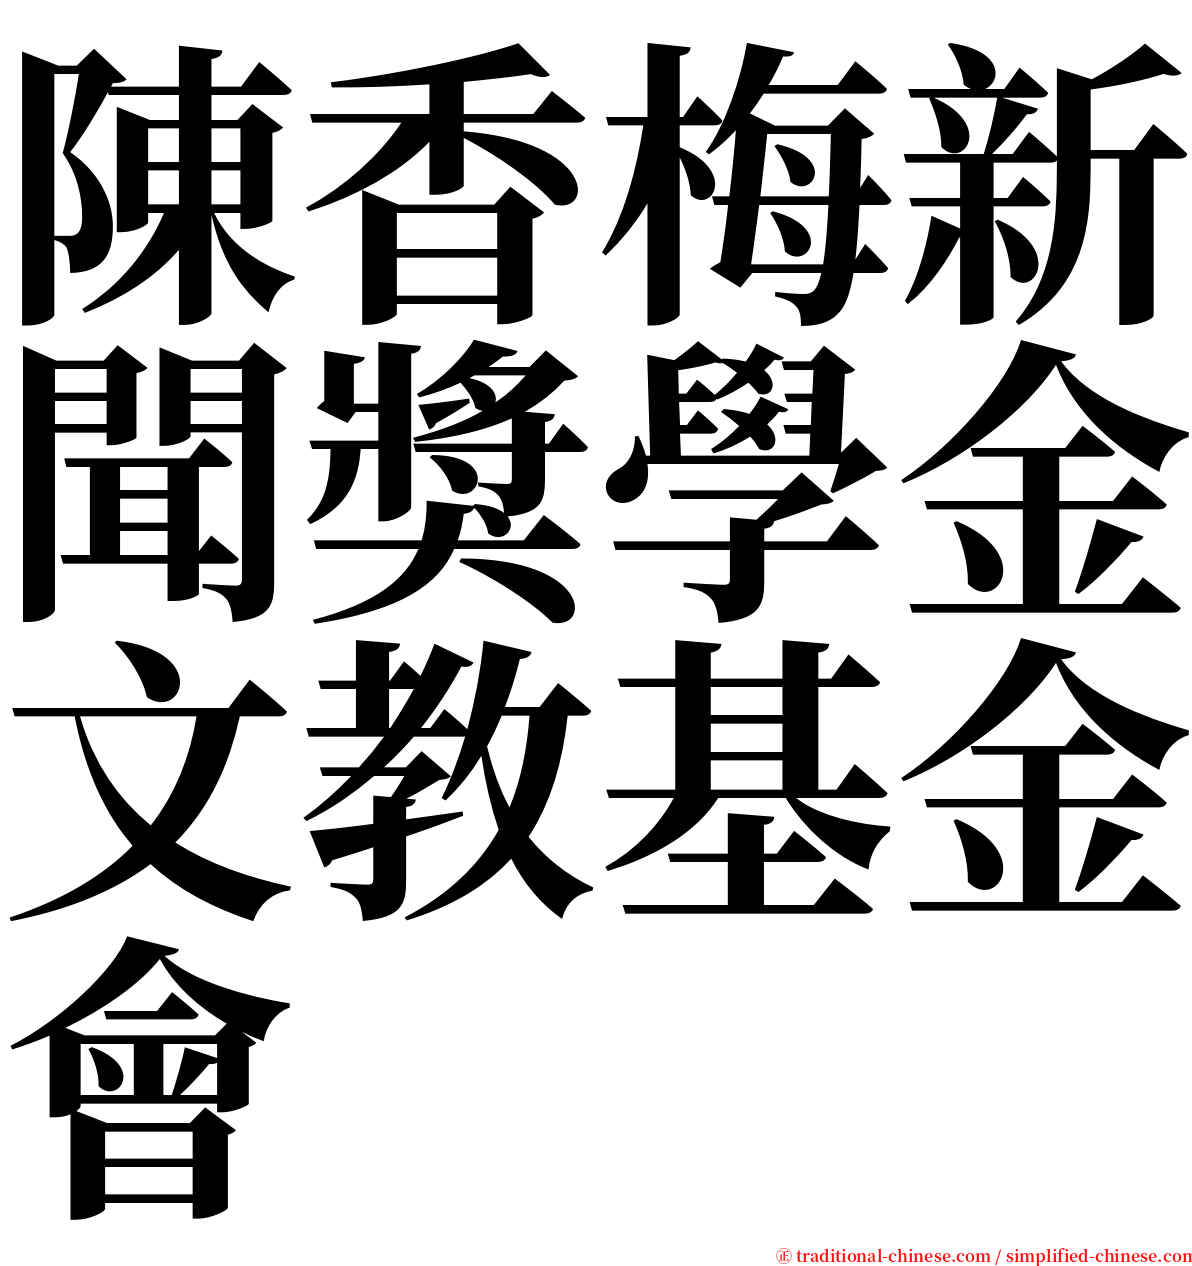 陳香梅新聞獎學金文教基金會 serif font